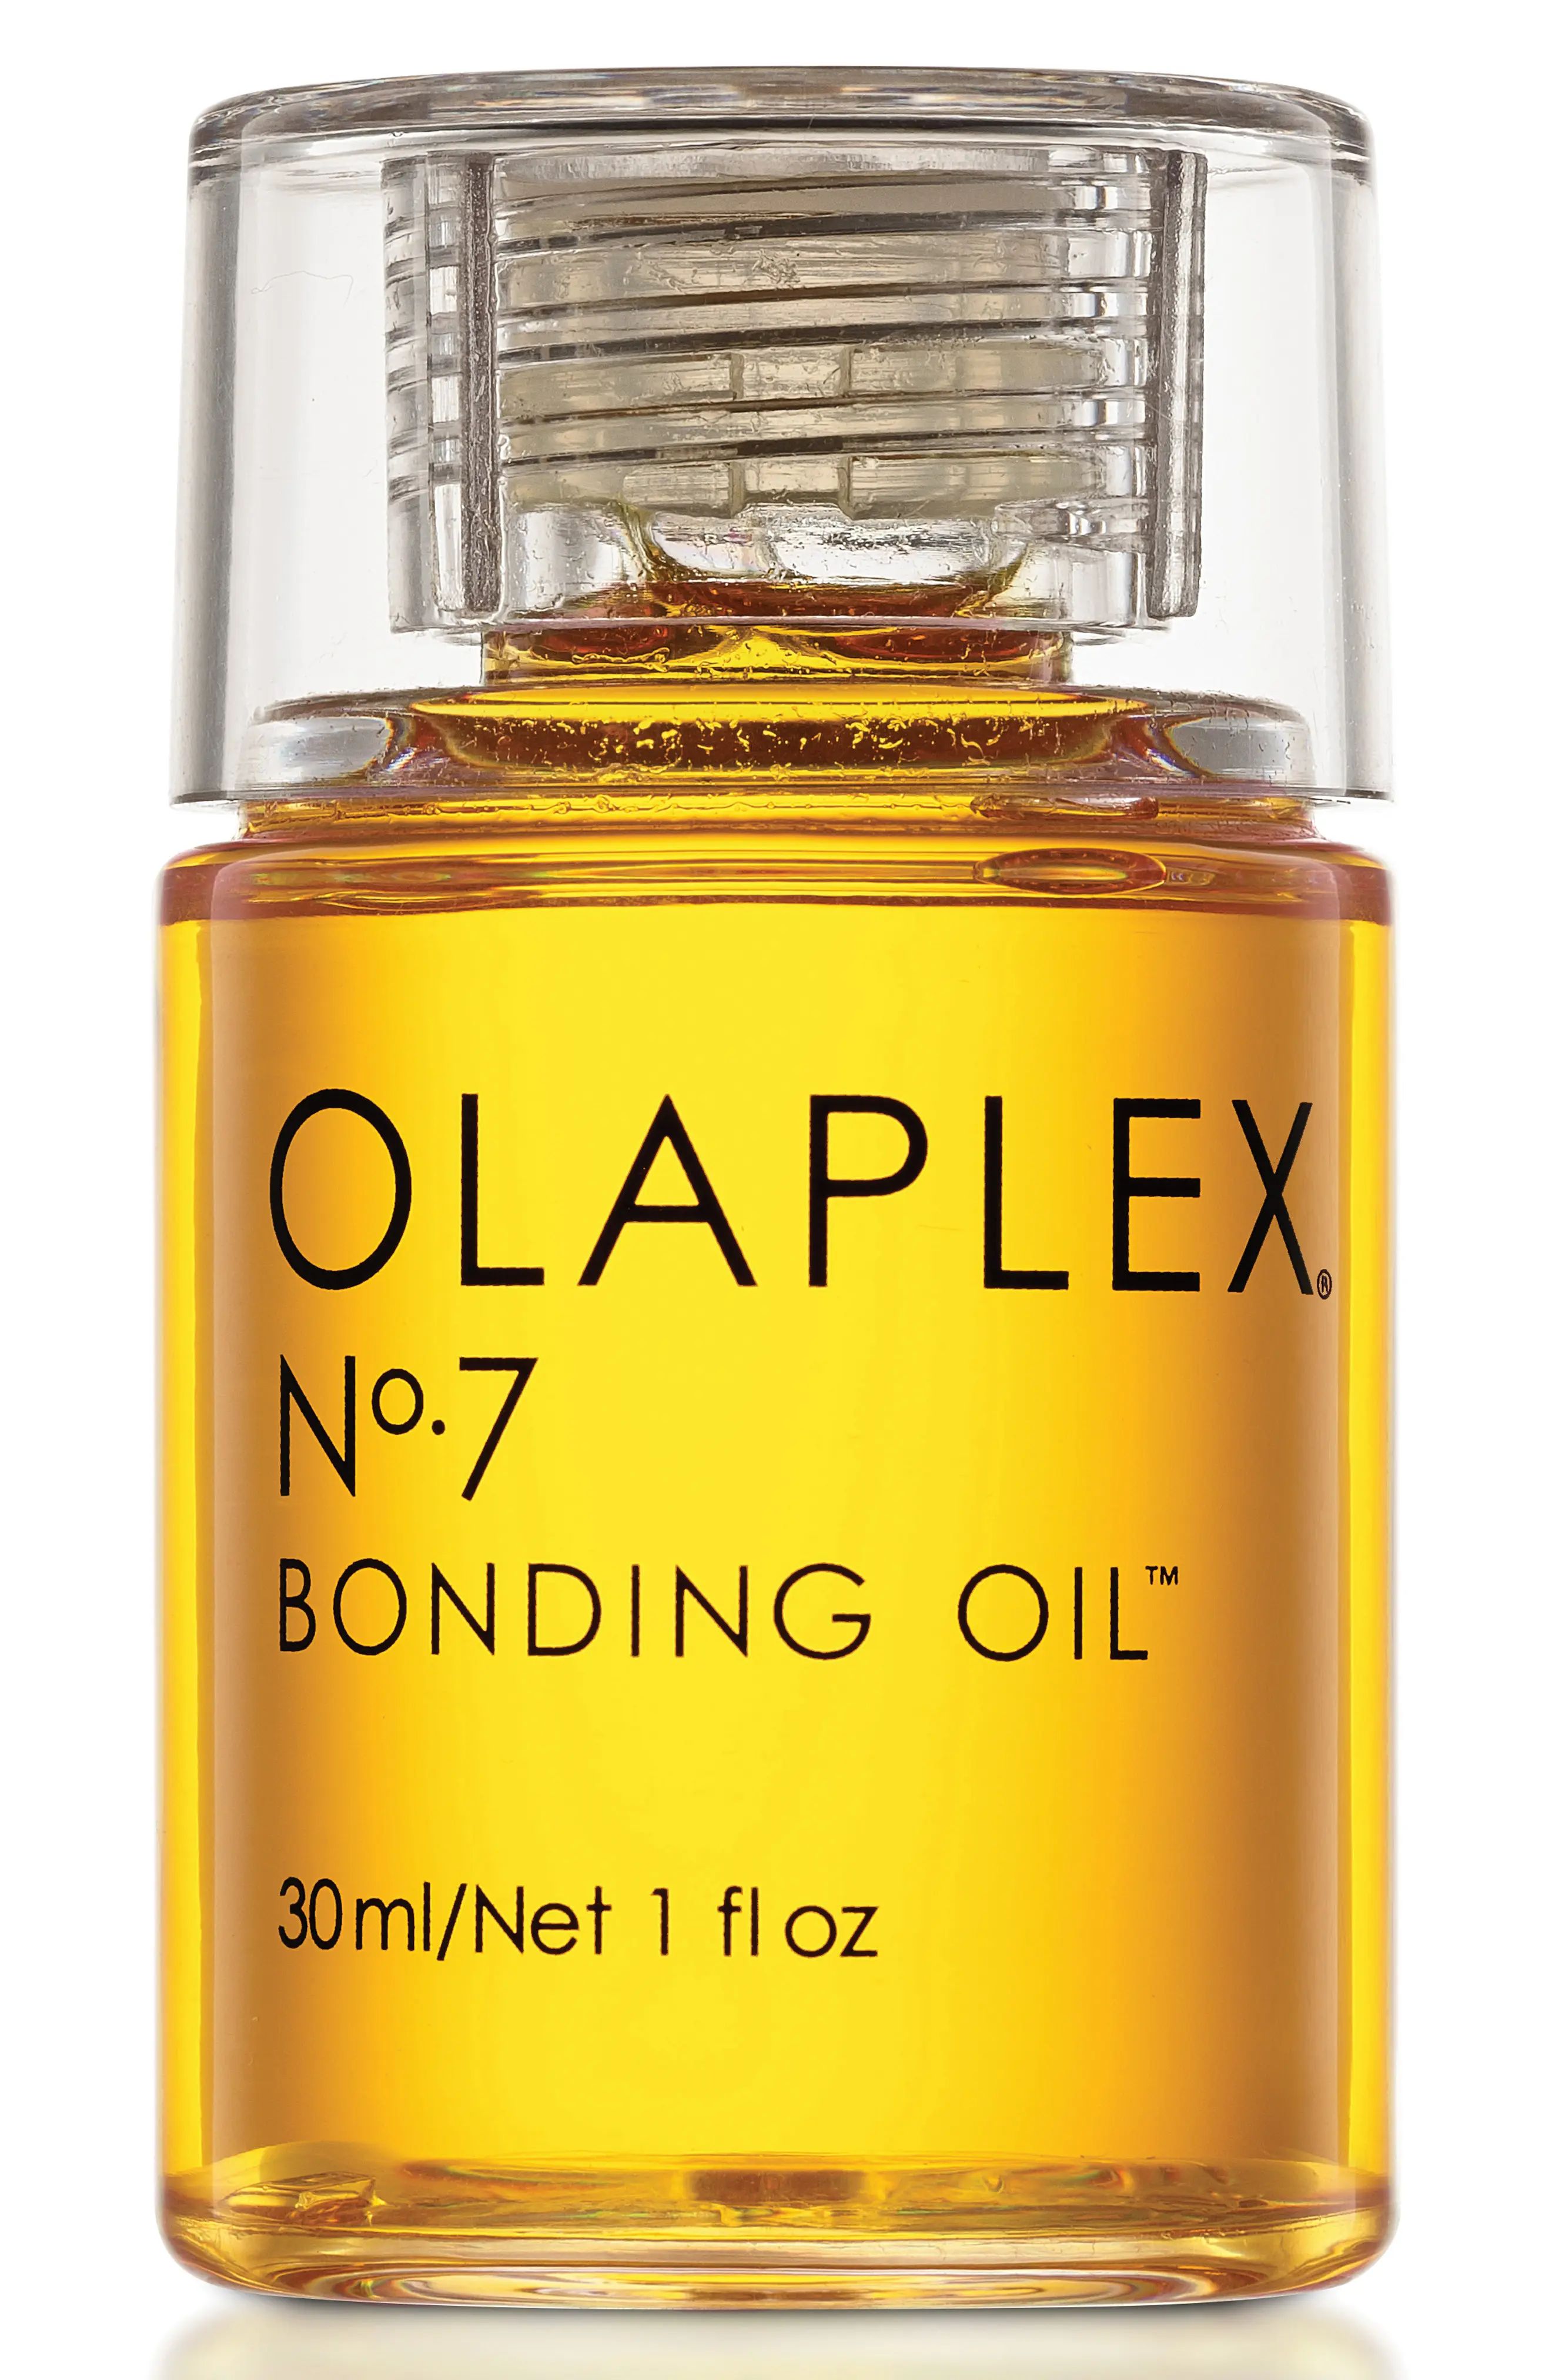 Olaplex No. 7 Bonding Oil at Nordstrom | Nordstrom